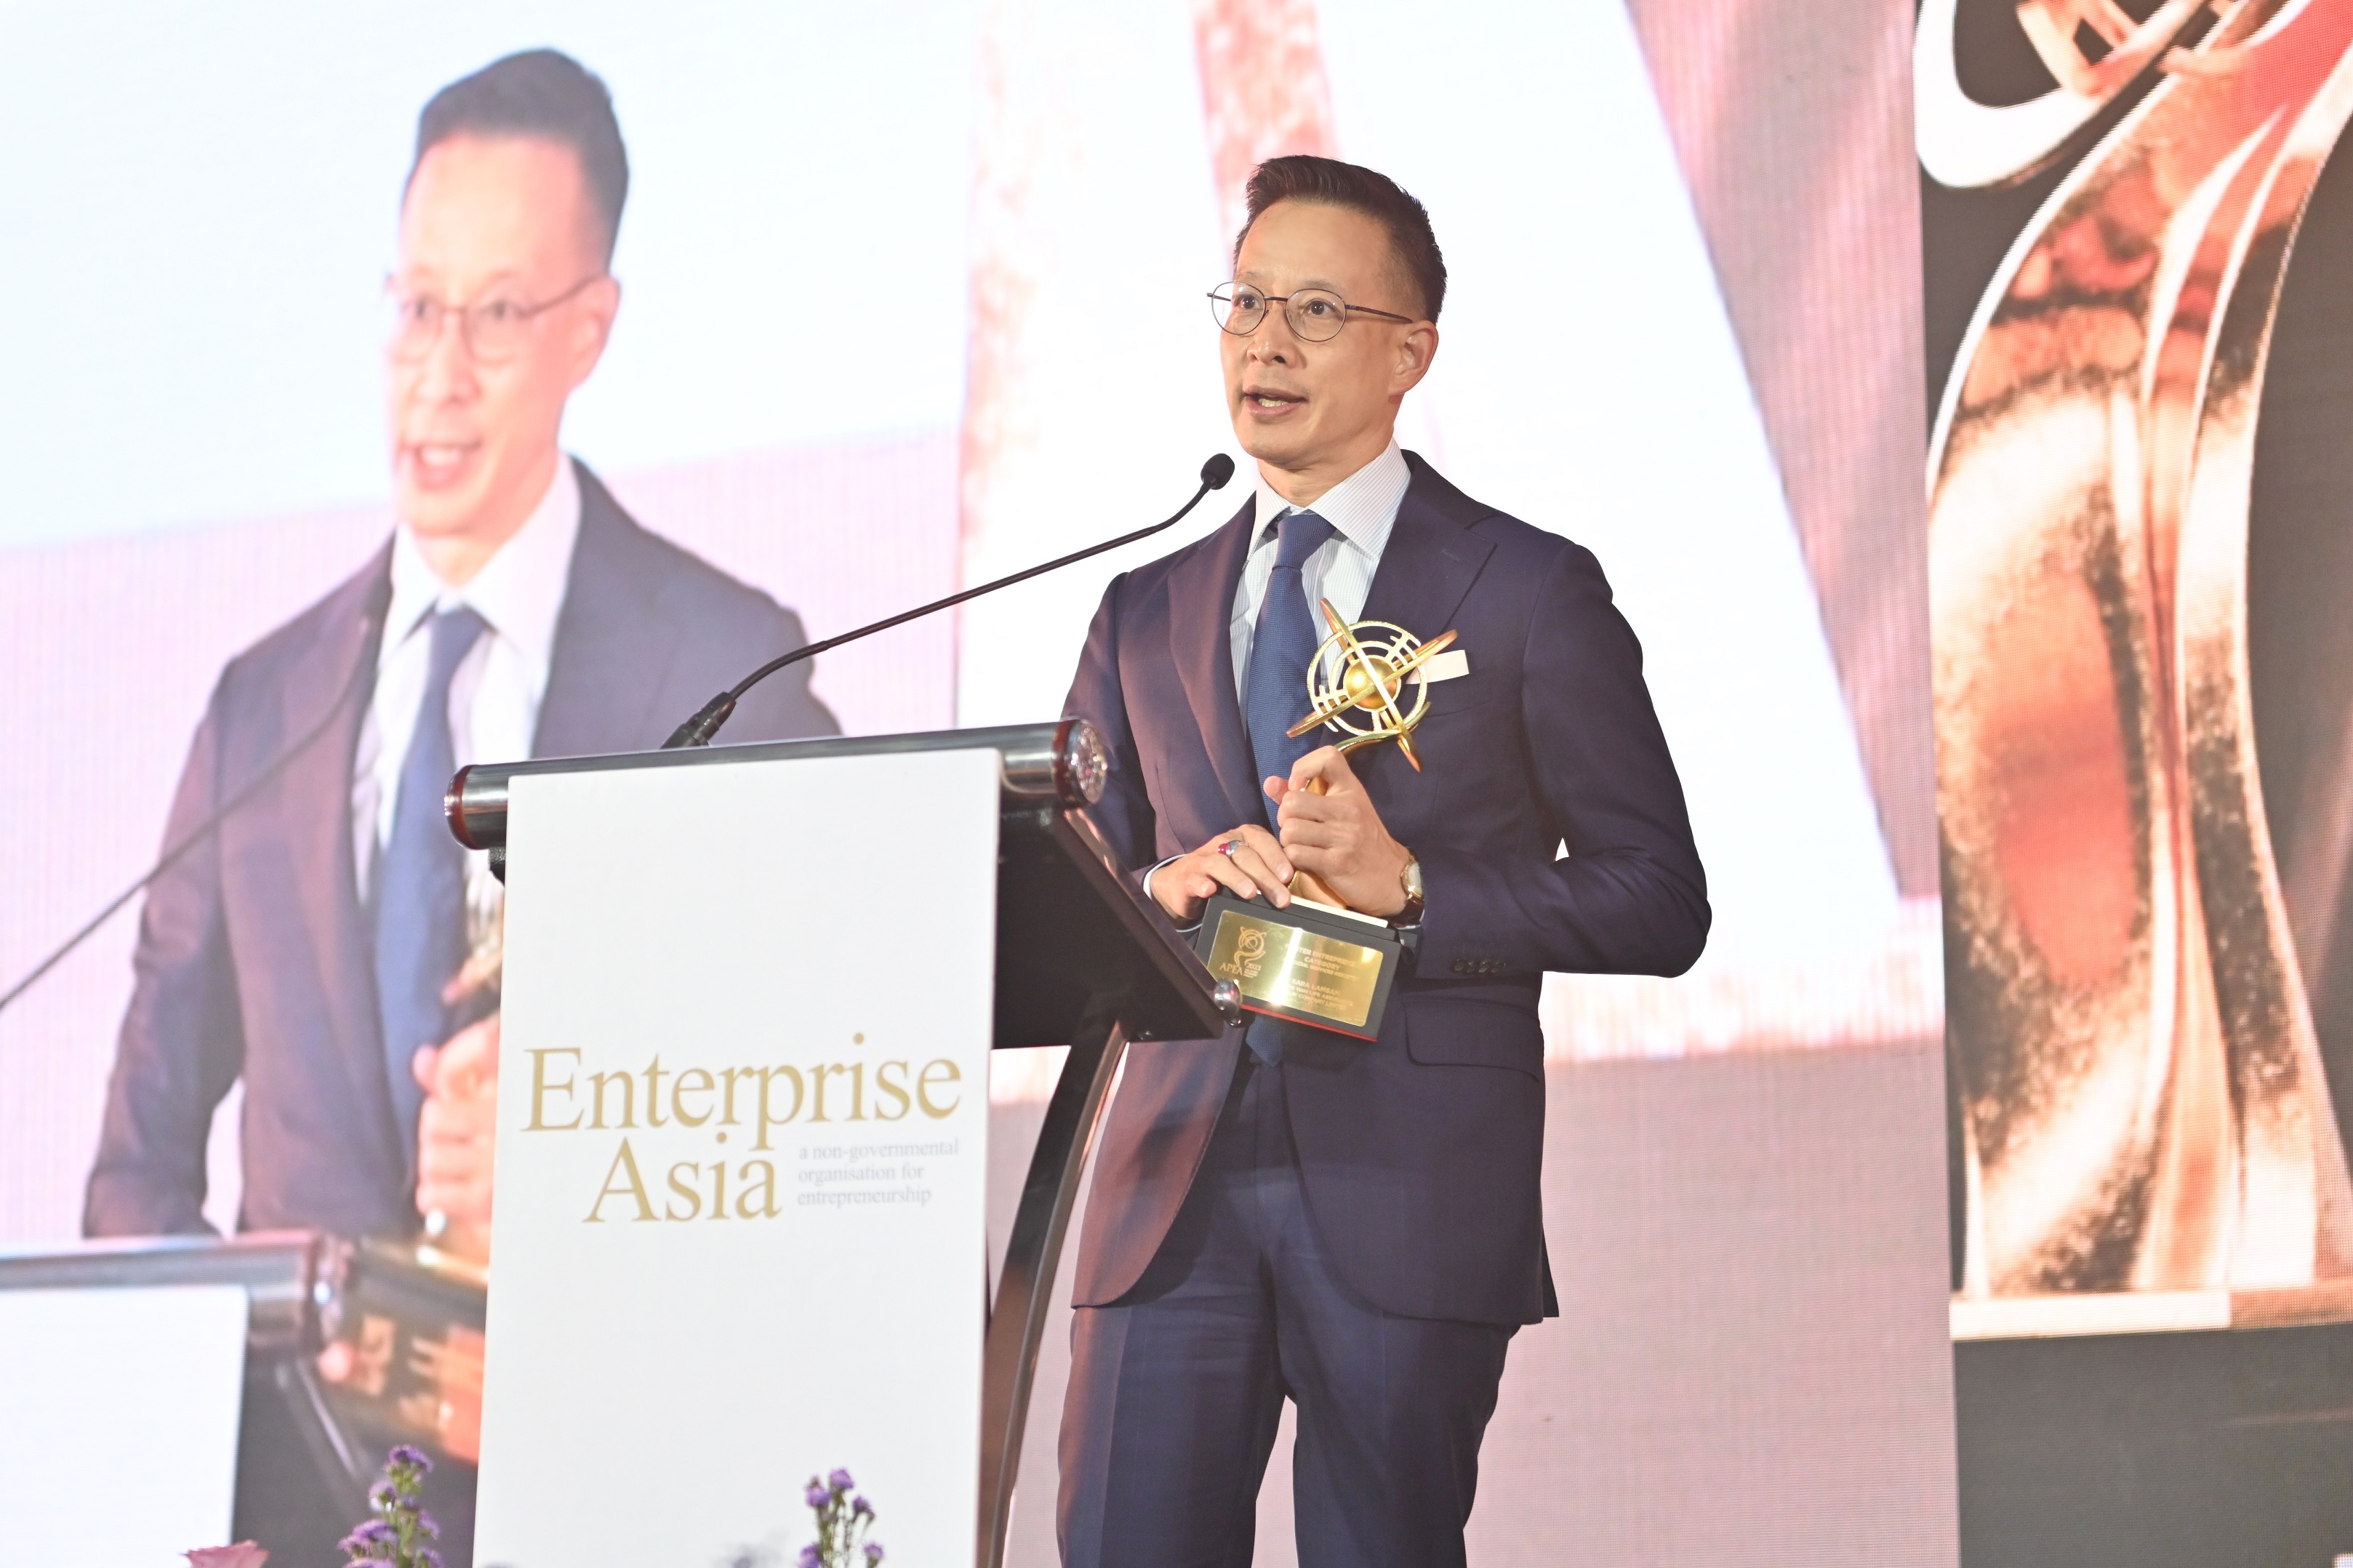 สุดยอดผู้นำองค์กร “สาระ ล่ำซำ” คว้ารางวัล “Master Entrepreneur Award” ต่อเนื่องเป็นปีที่ 3 และเมืองไทยประกันชีวิต รับ 2 รางวัลใหญ่ระดับสากล จากเวที Asia Pacific Enterprise Awards (APEA) 2023